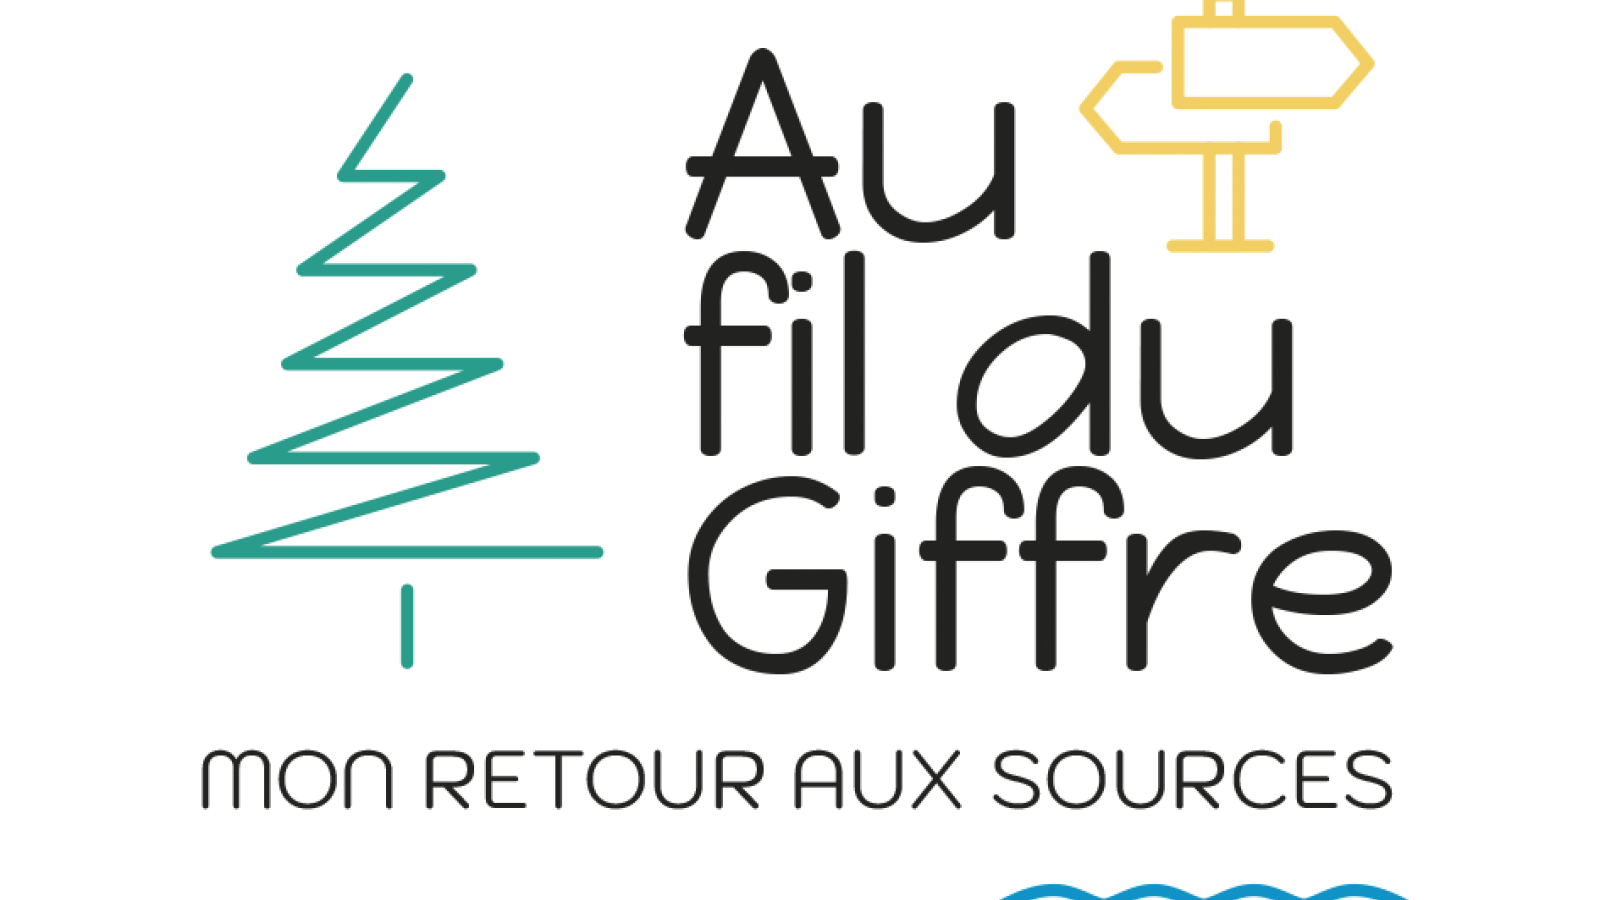 Logo au Fil du Giffre